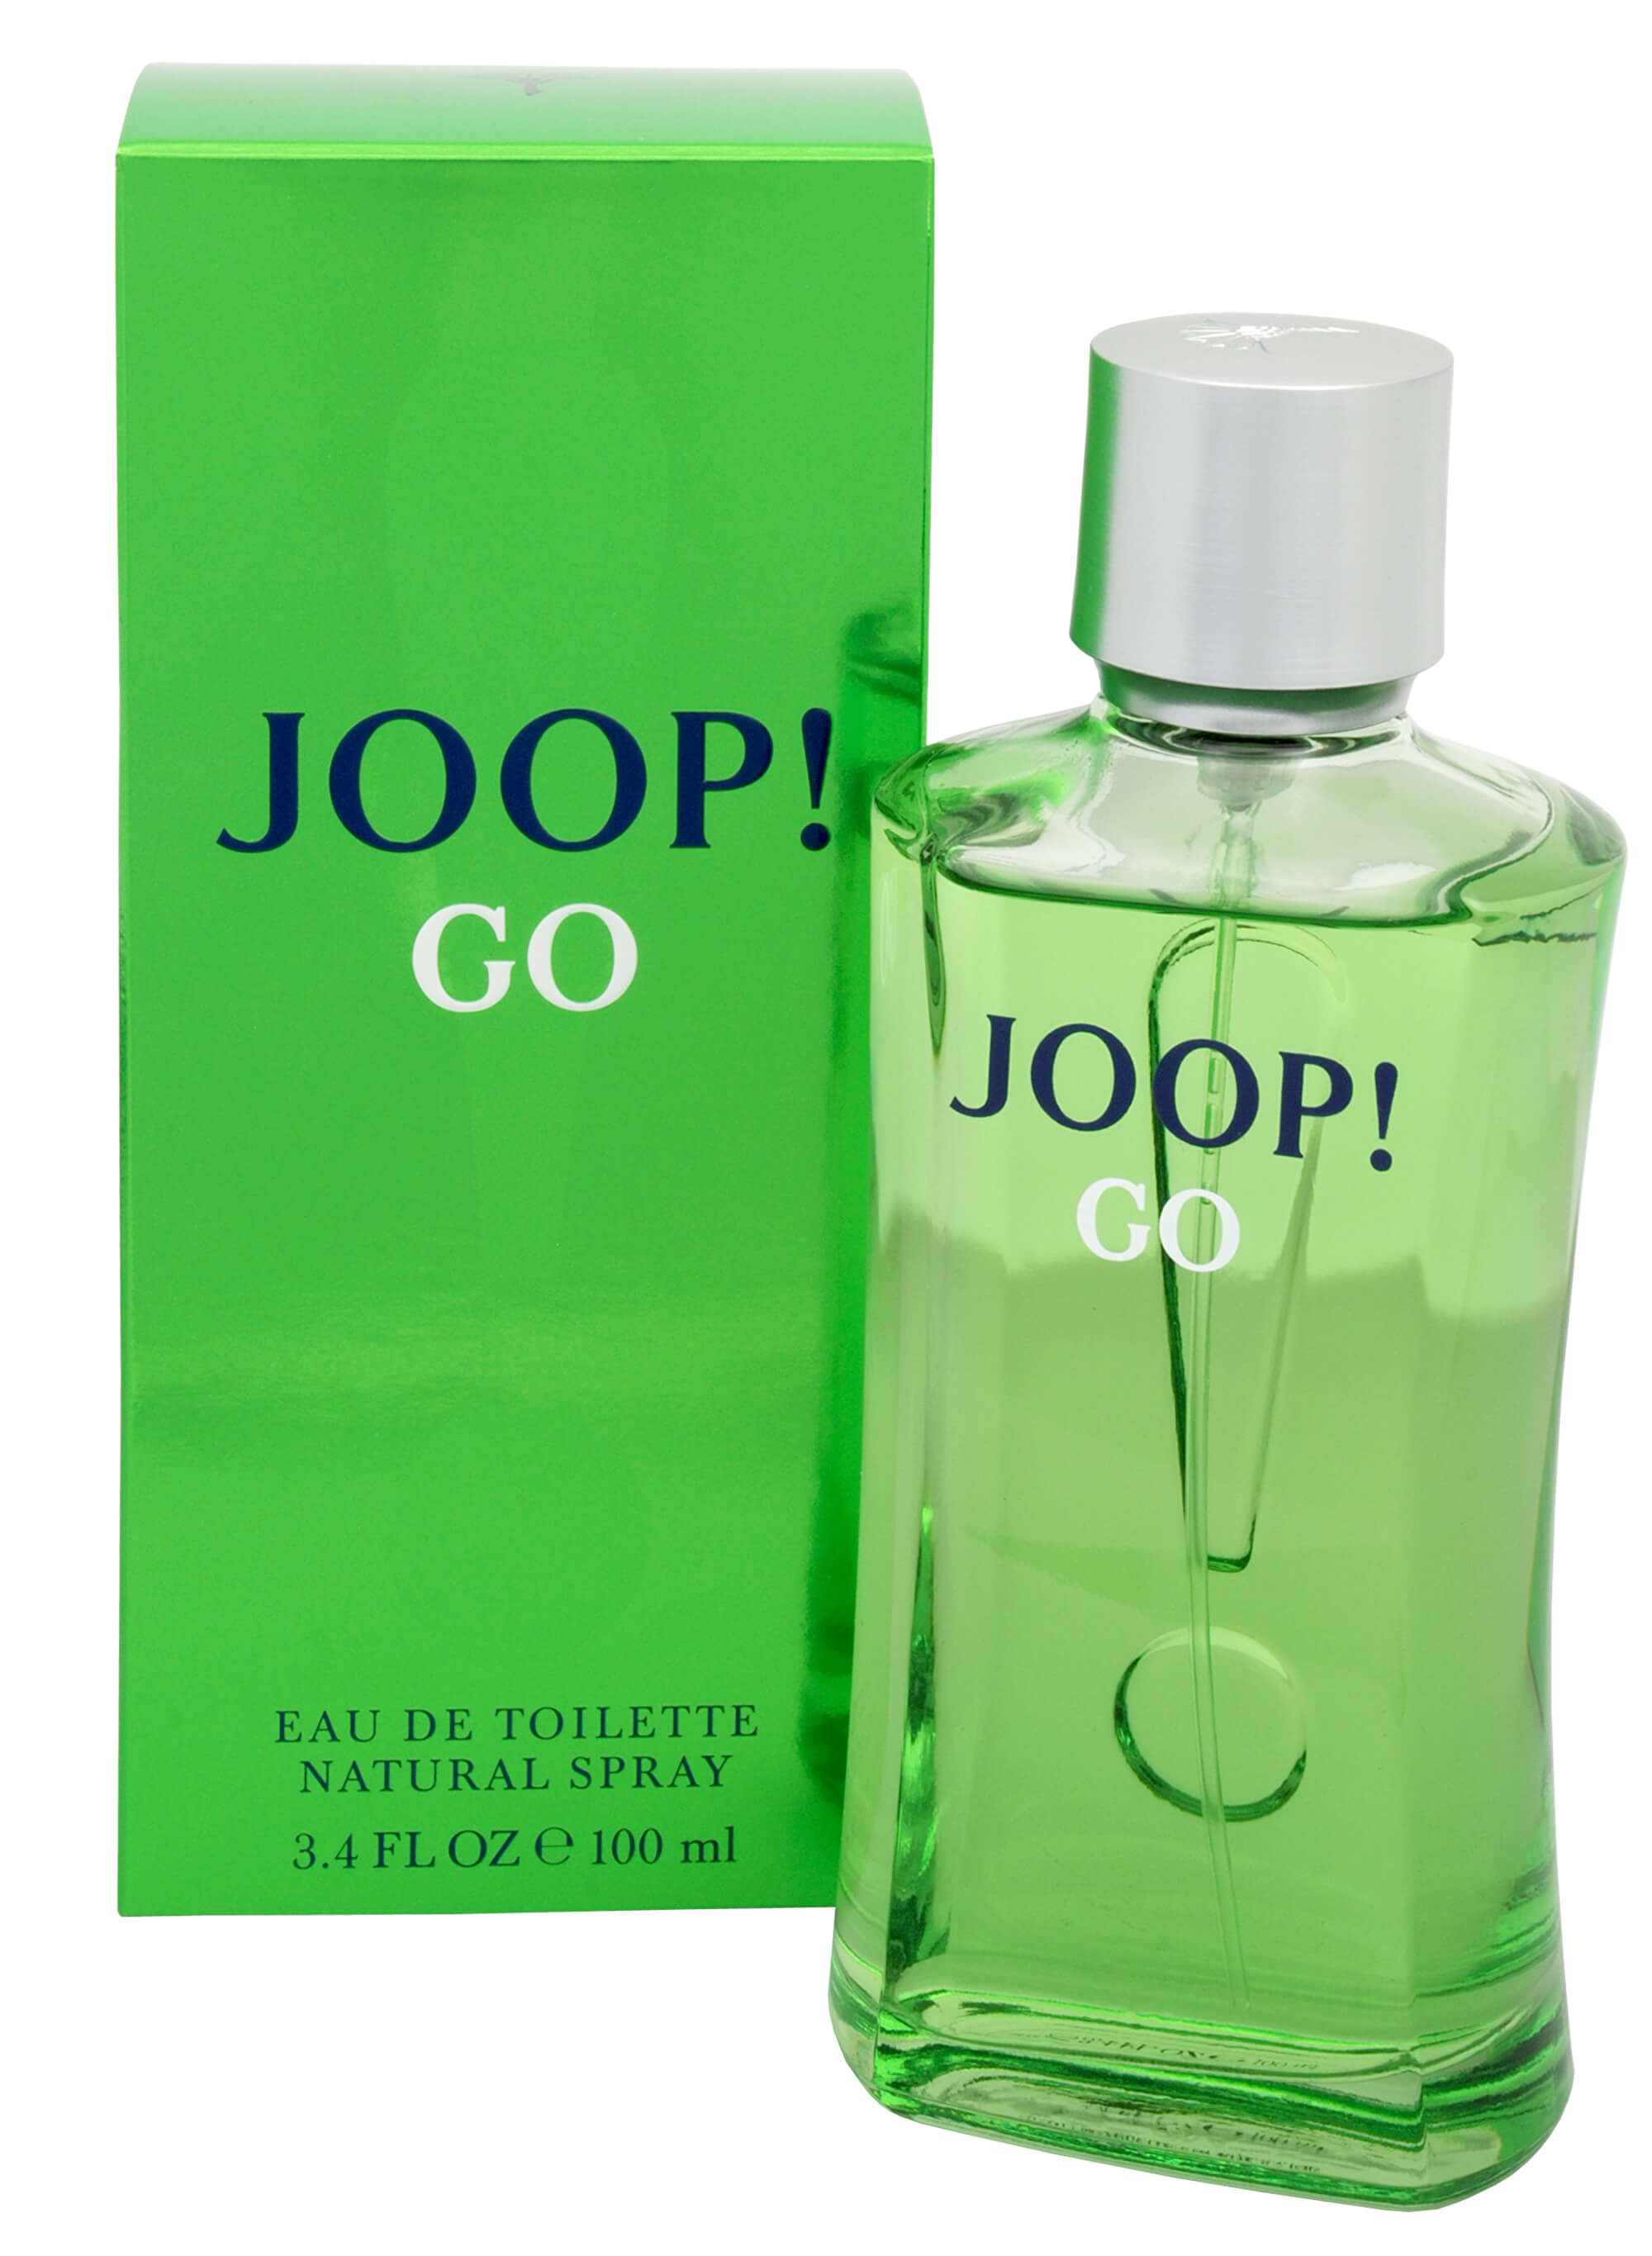 Joop! Go - EDT 100 ml